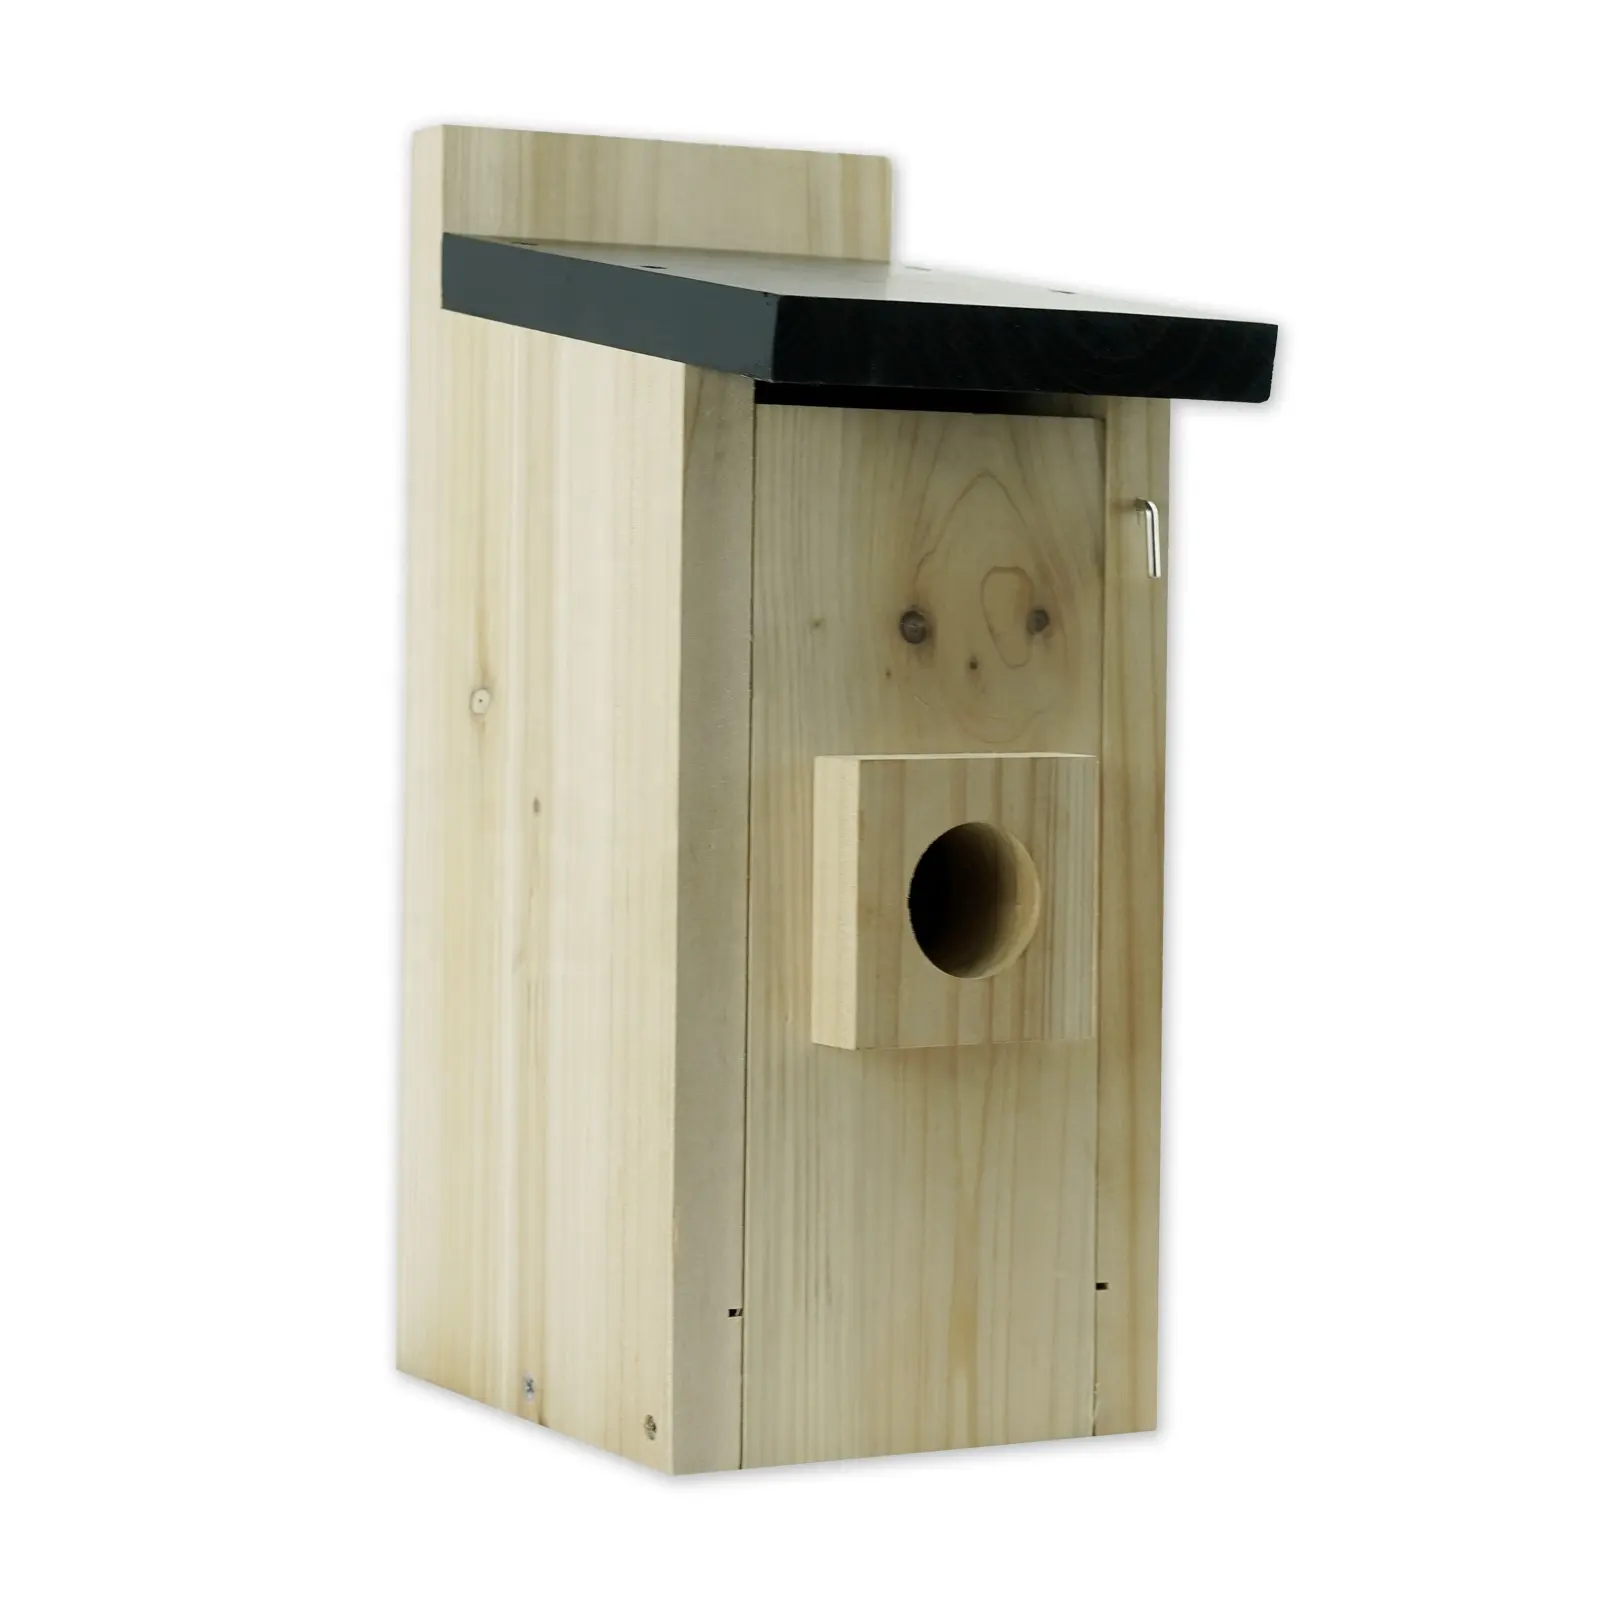 Alta qualidade água ao ar livre à prova de madeira gaiola pássaro casa, ao ar livre diy pássaro ninho caixa pendurado árvore birdhouse de madeira